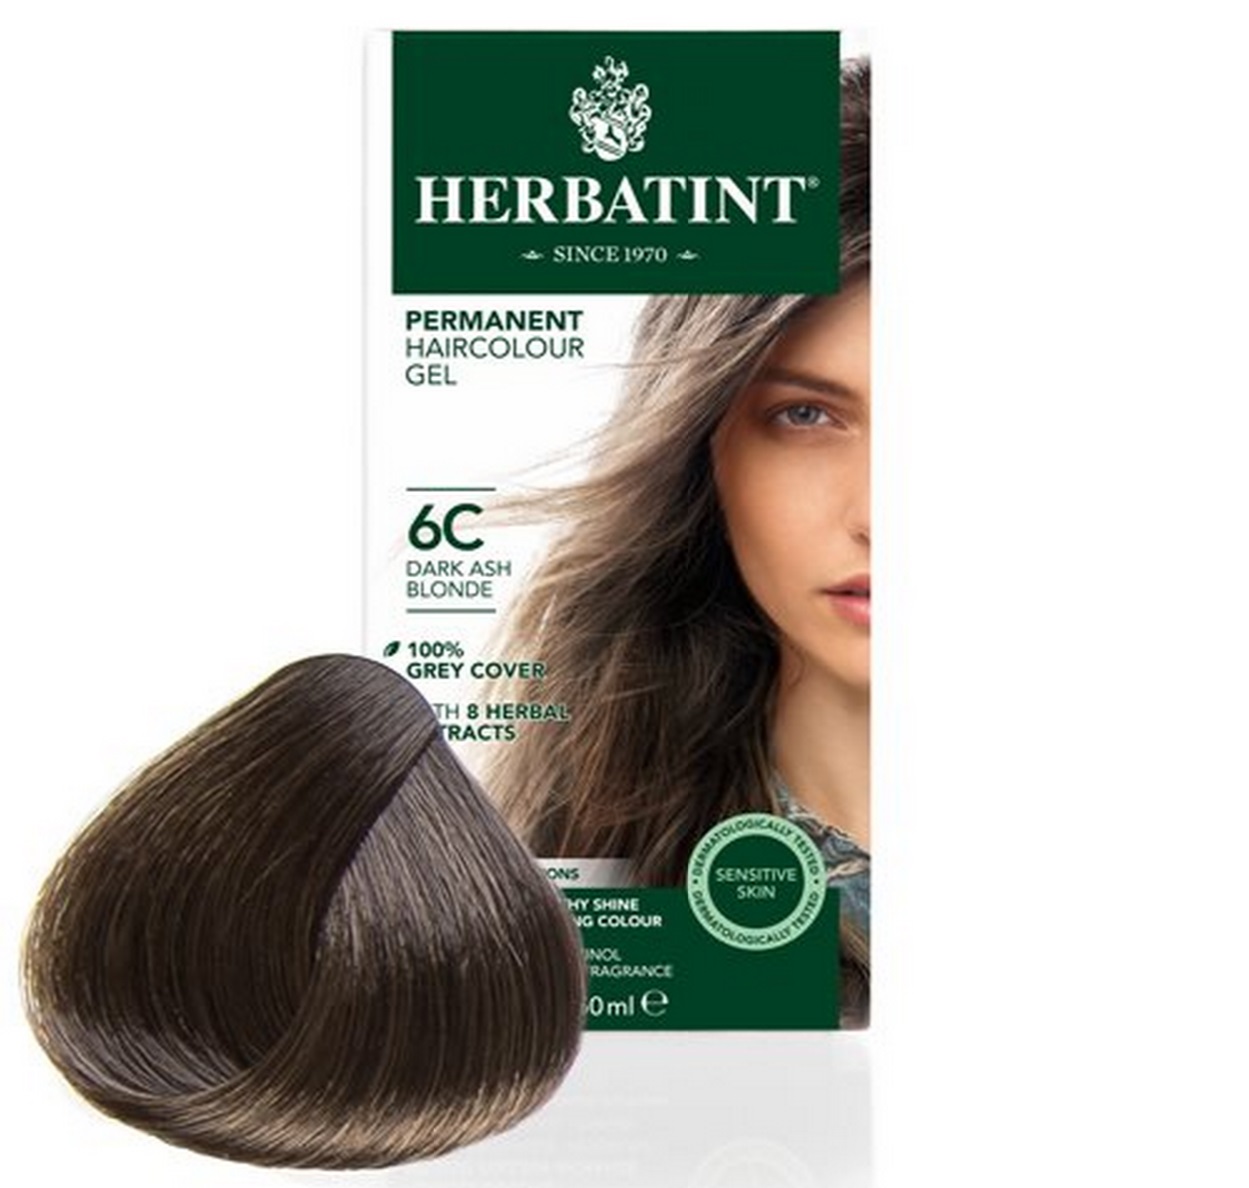 Billede af Herbatint 6C hårfarve Dark Ash Blond, 150ml.